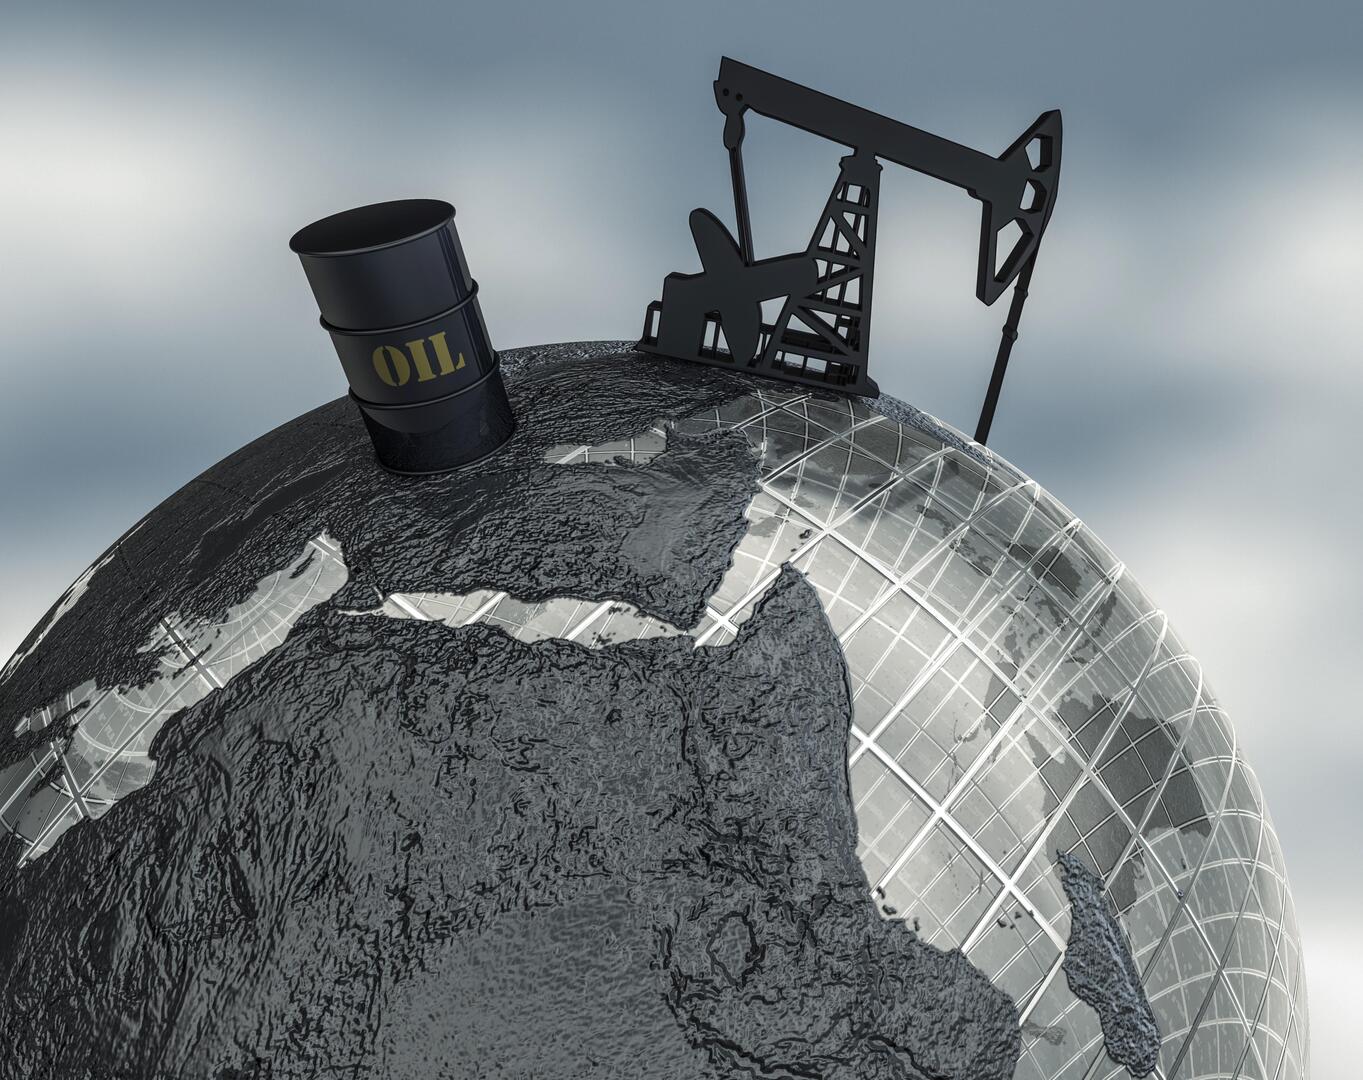 بوتين عن وضع الغرب سقفا لأسعار النفط: اقتراح غبي وسيؤدي إلى انهيار قطاع الطاقة